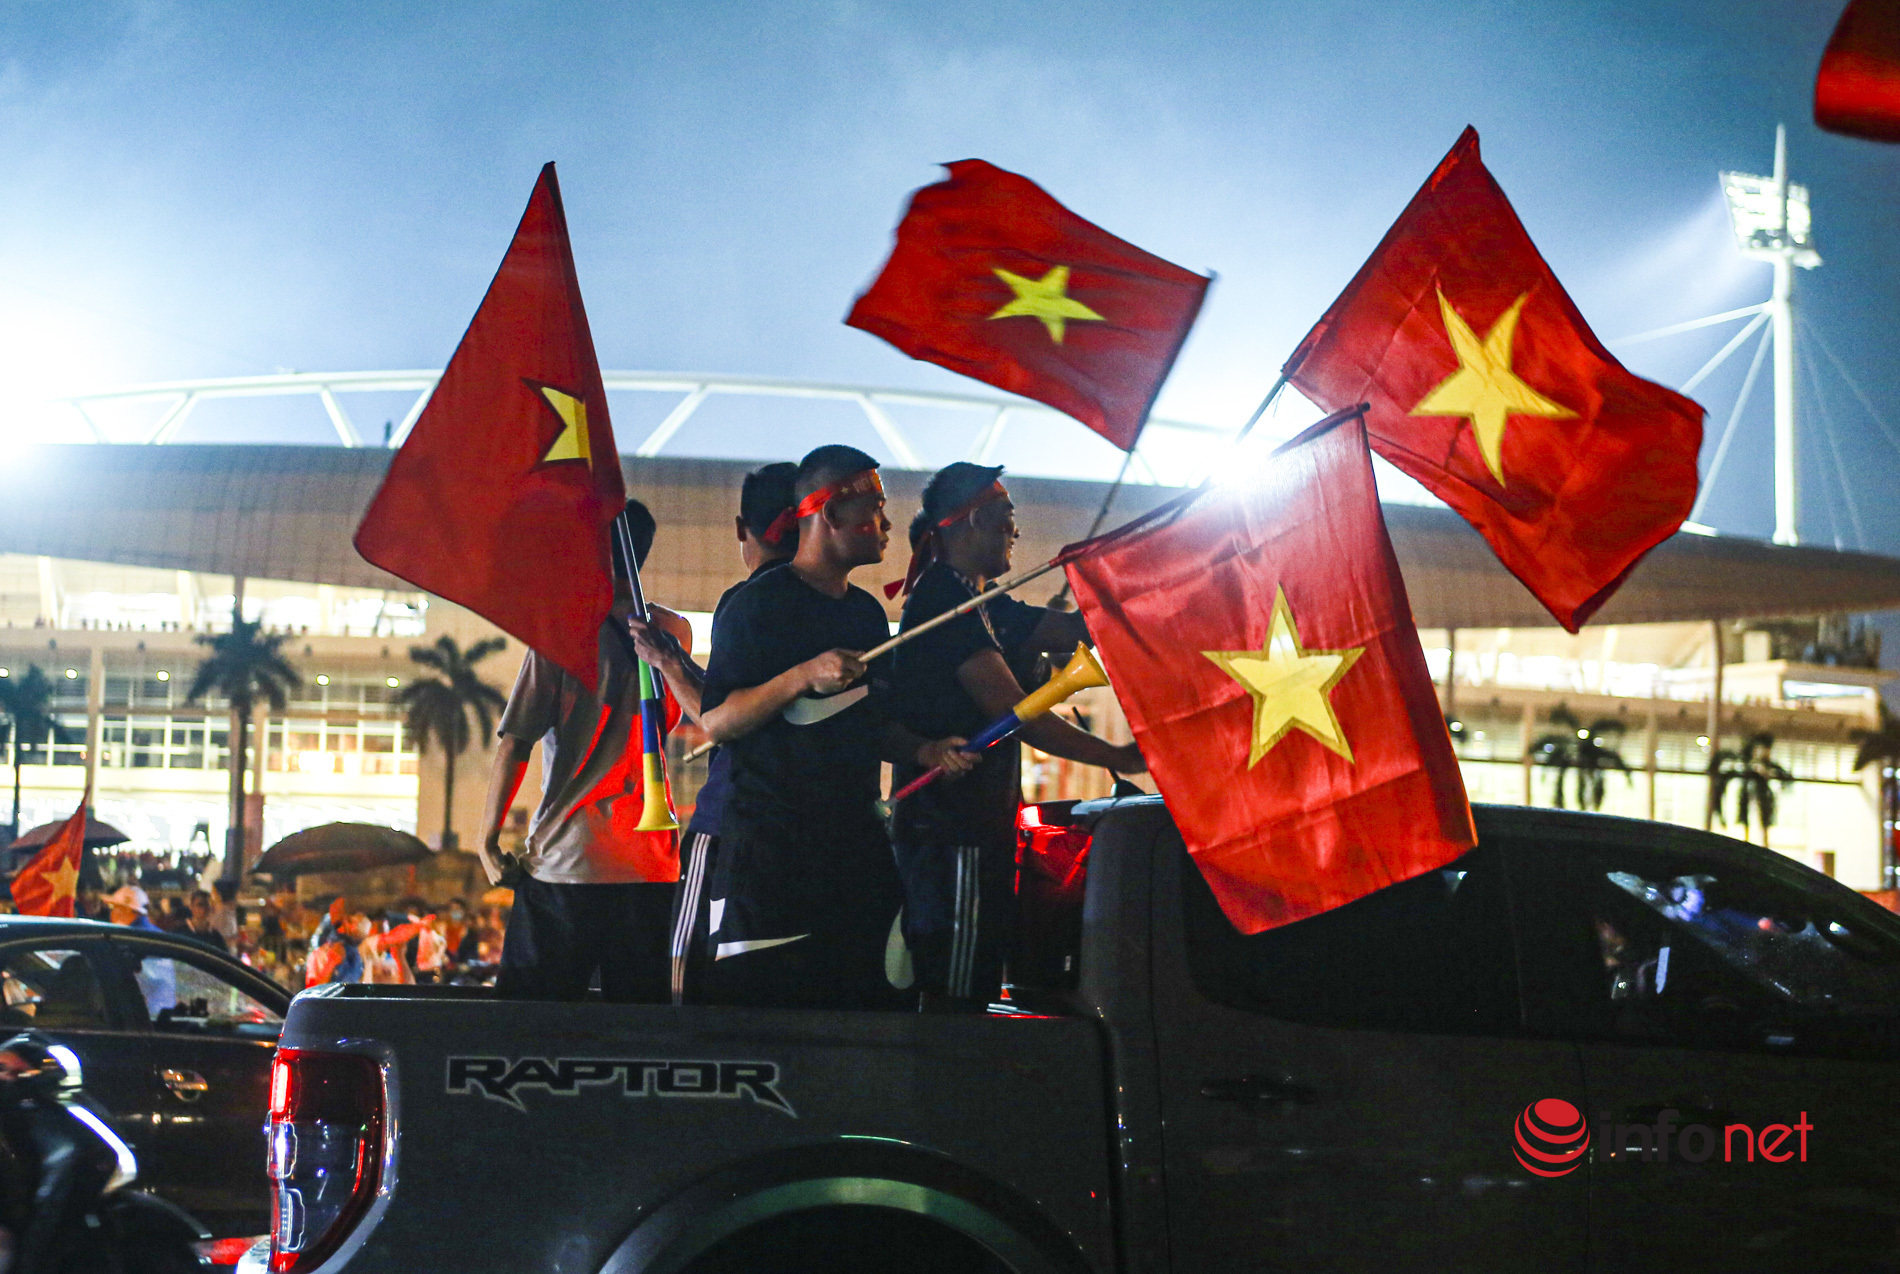 Hàng vạn cổ động viên xuống phố 'đi bão' sau chiến thắng của đội tuyển U23 Việt Nam